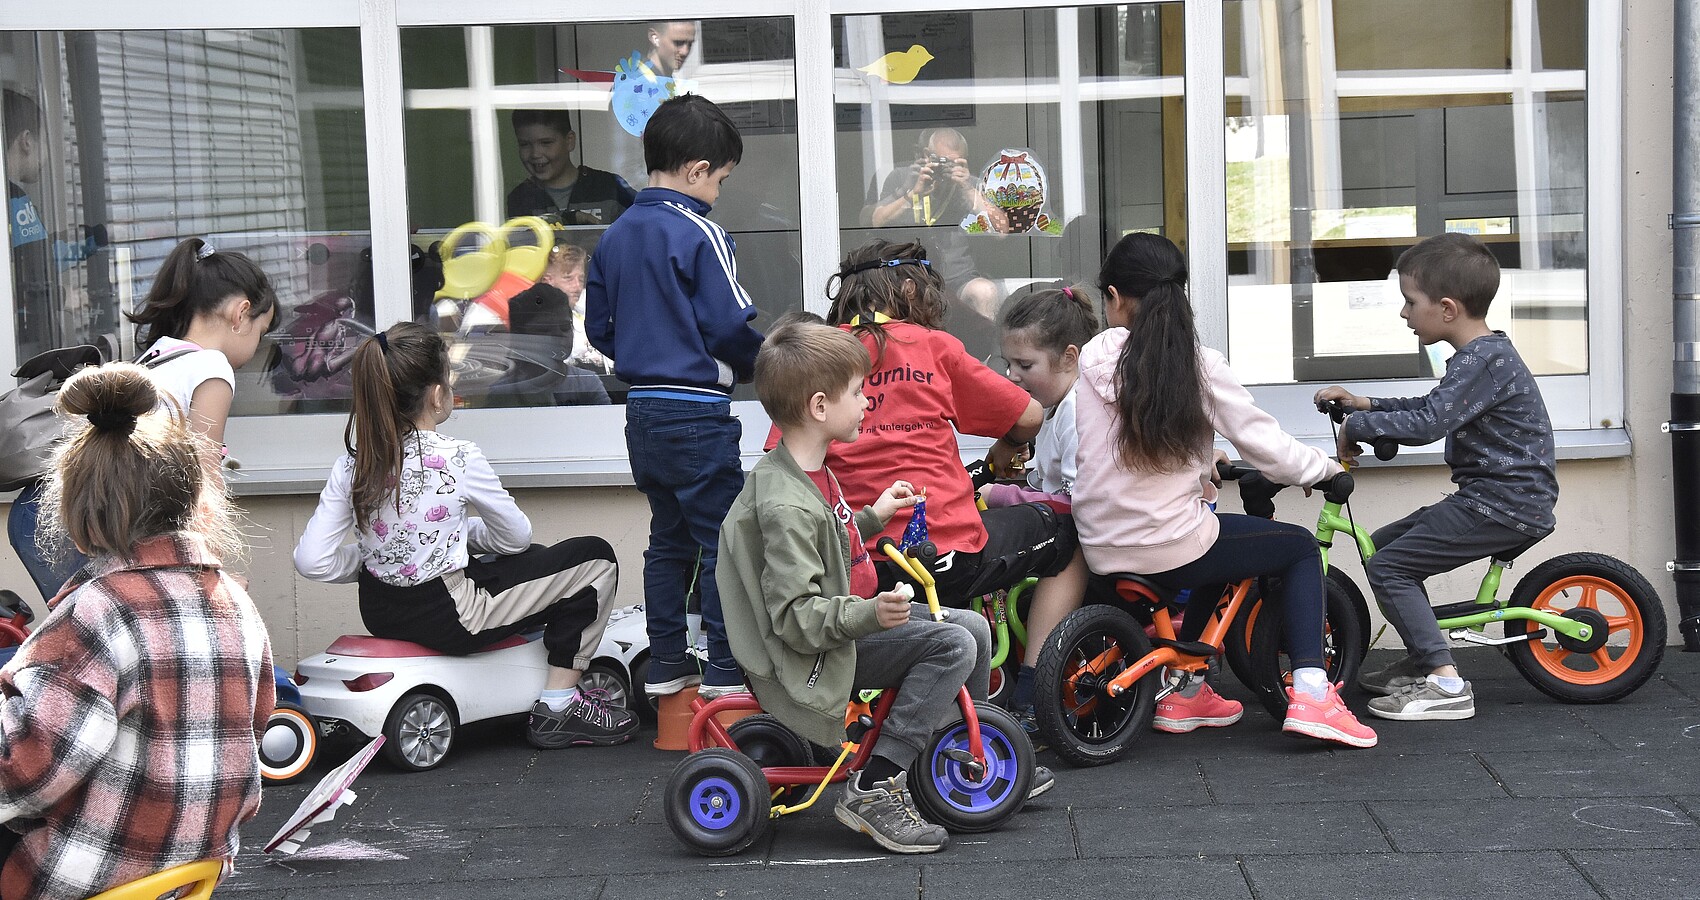 Das Bild zeigt eine Gruppe spielender Kindern auf Dreirädern, Laufrädern und Bobbycars vor einem großen Fenster eines Gebäudes